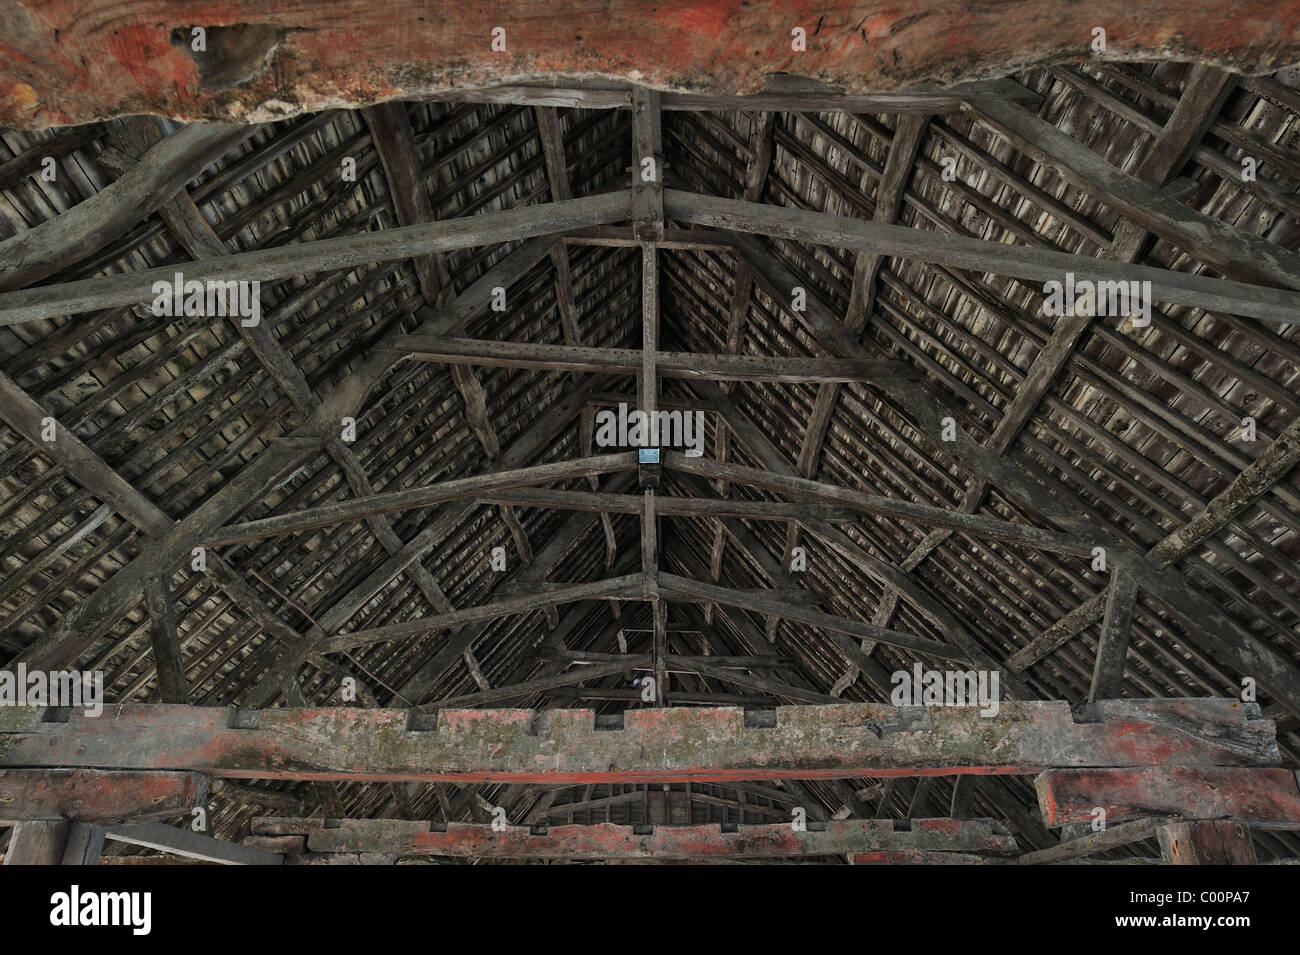 Les halles à pans de bois, un marché couvert datant du début du 15ème siècle à Plouescat, Finistère, Bretagne, France Banque D'Images